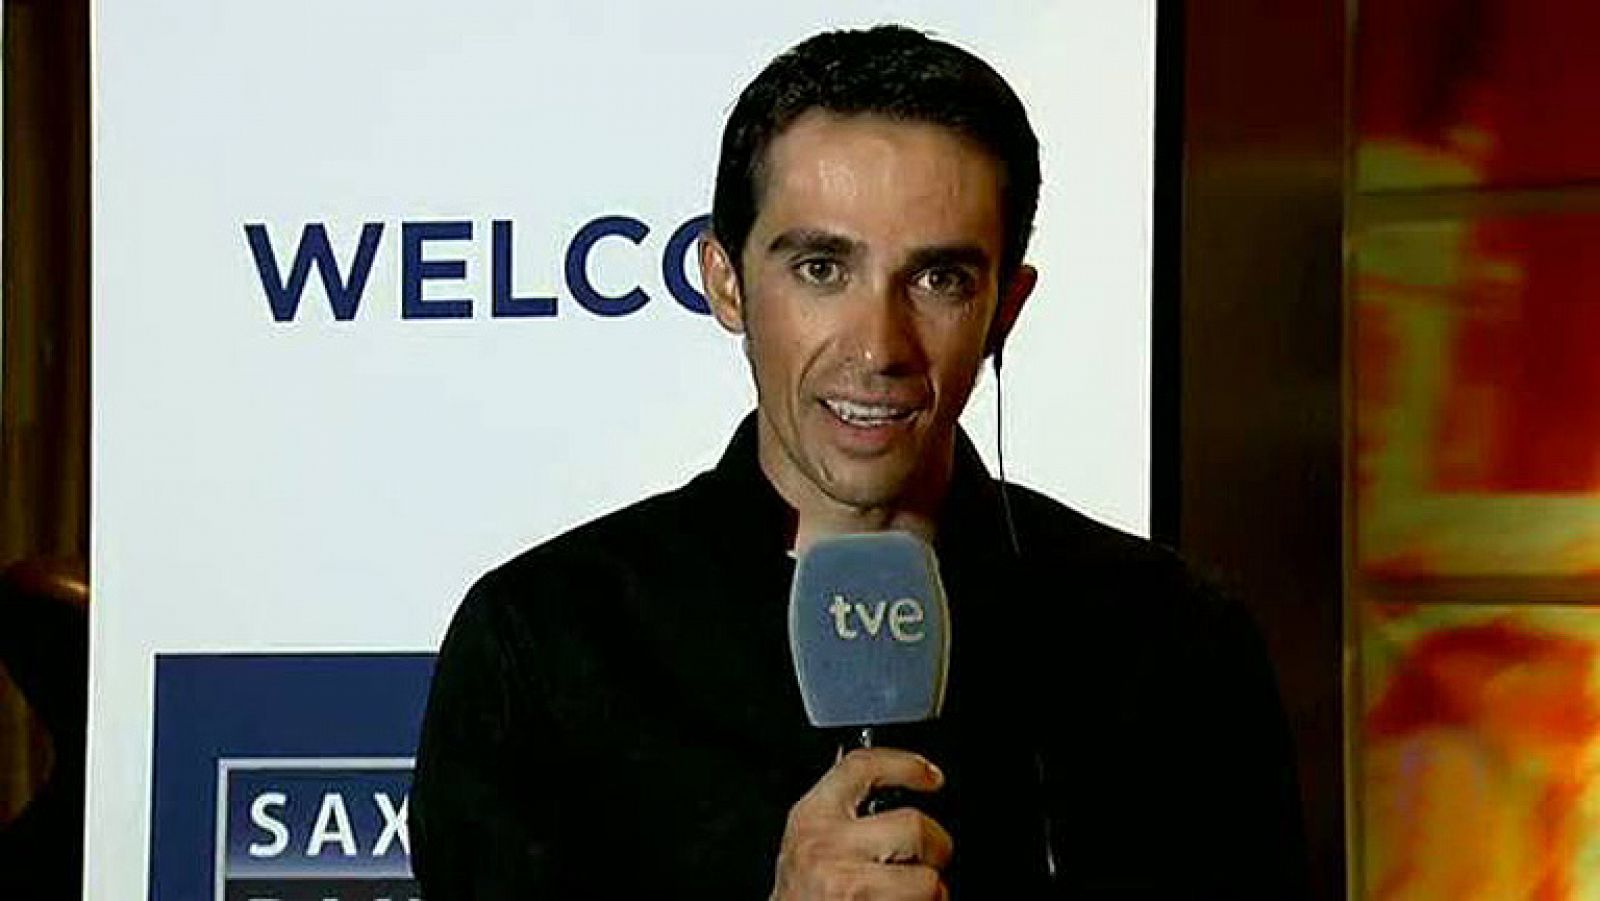 El vencedor de la Vuelta ciclista a España 2012 ha sido entrevistado por María Escario en el Telediario de TVE.